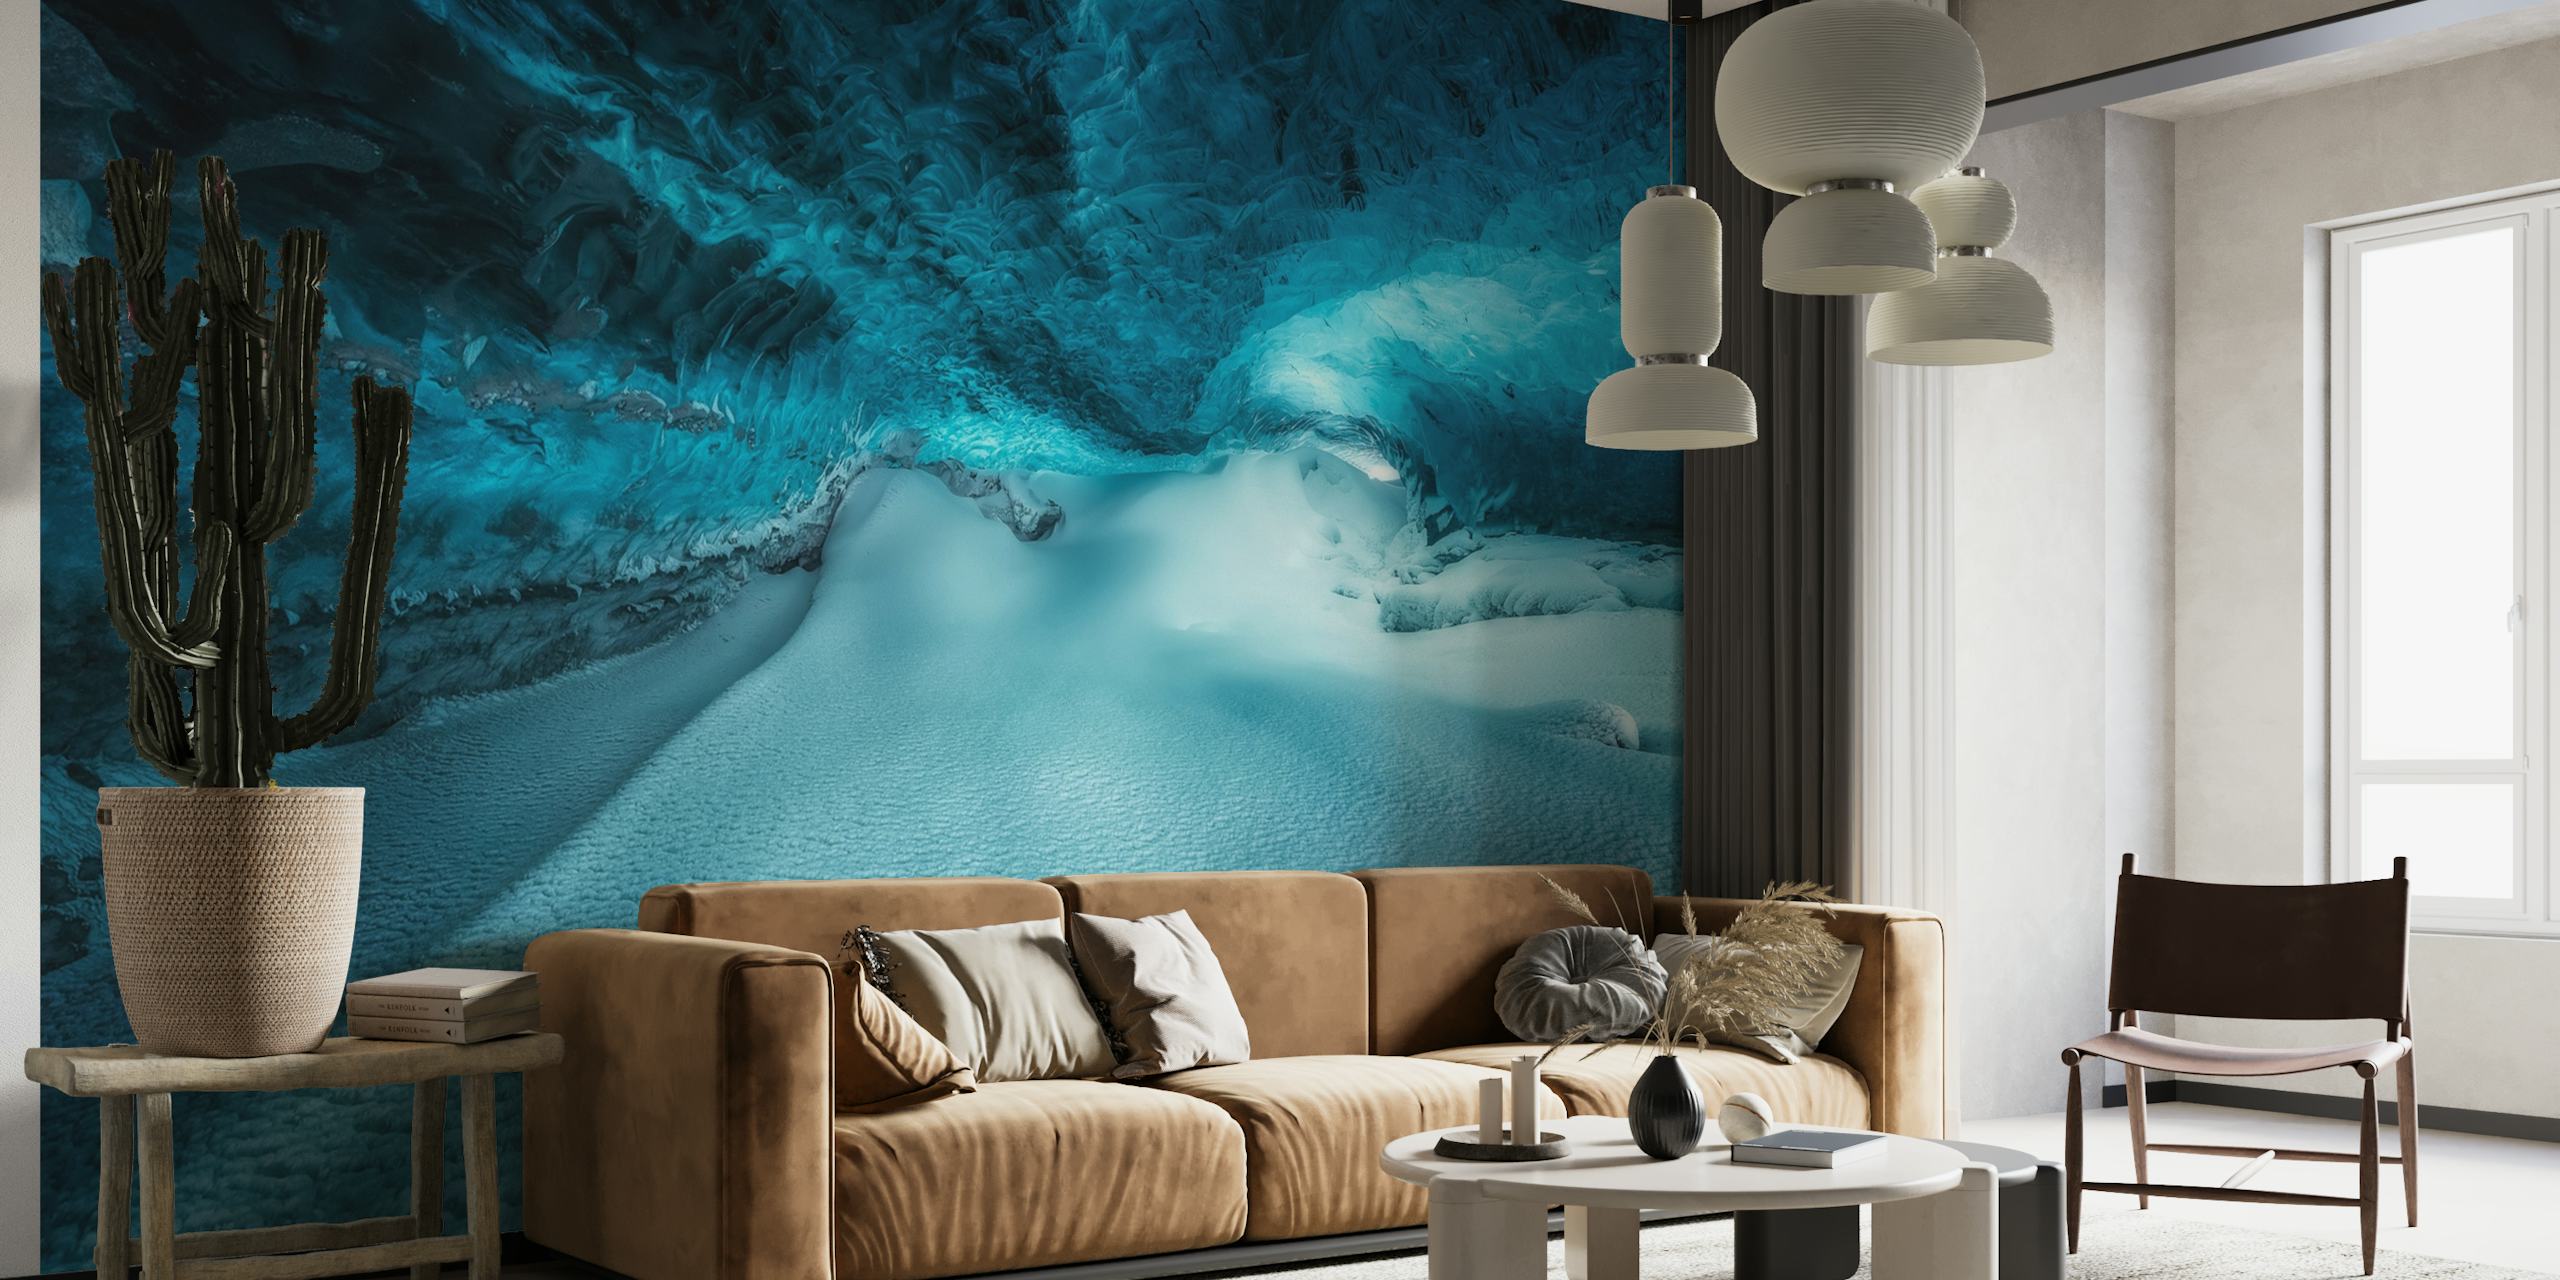 Vedenalainen jääluolaseinämaalaus, jossa on sinisen sävyjä ja jäädytettyjä tekstuureja